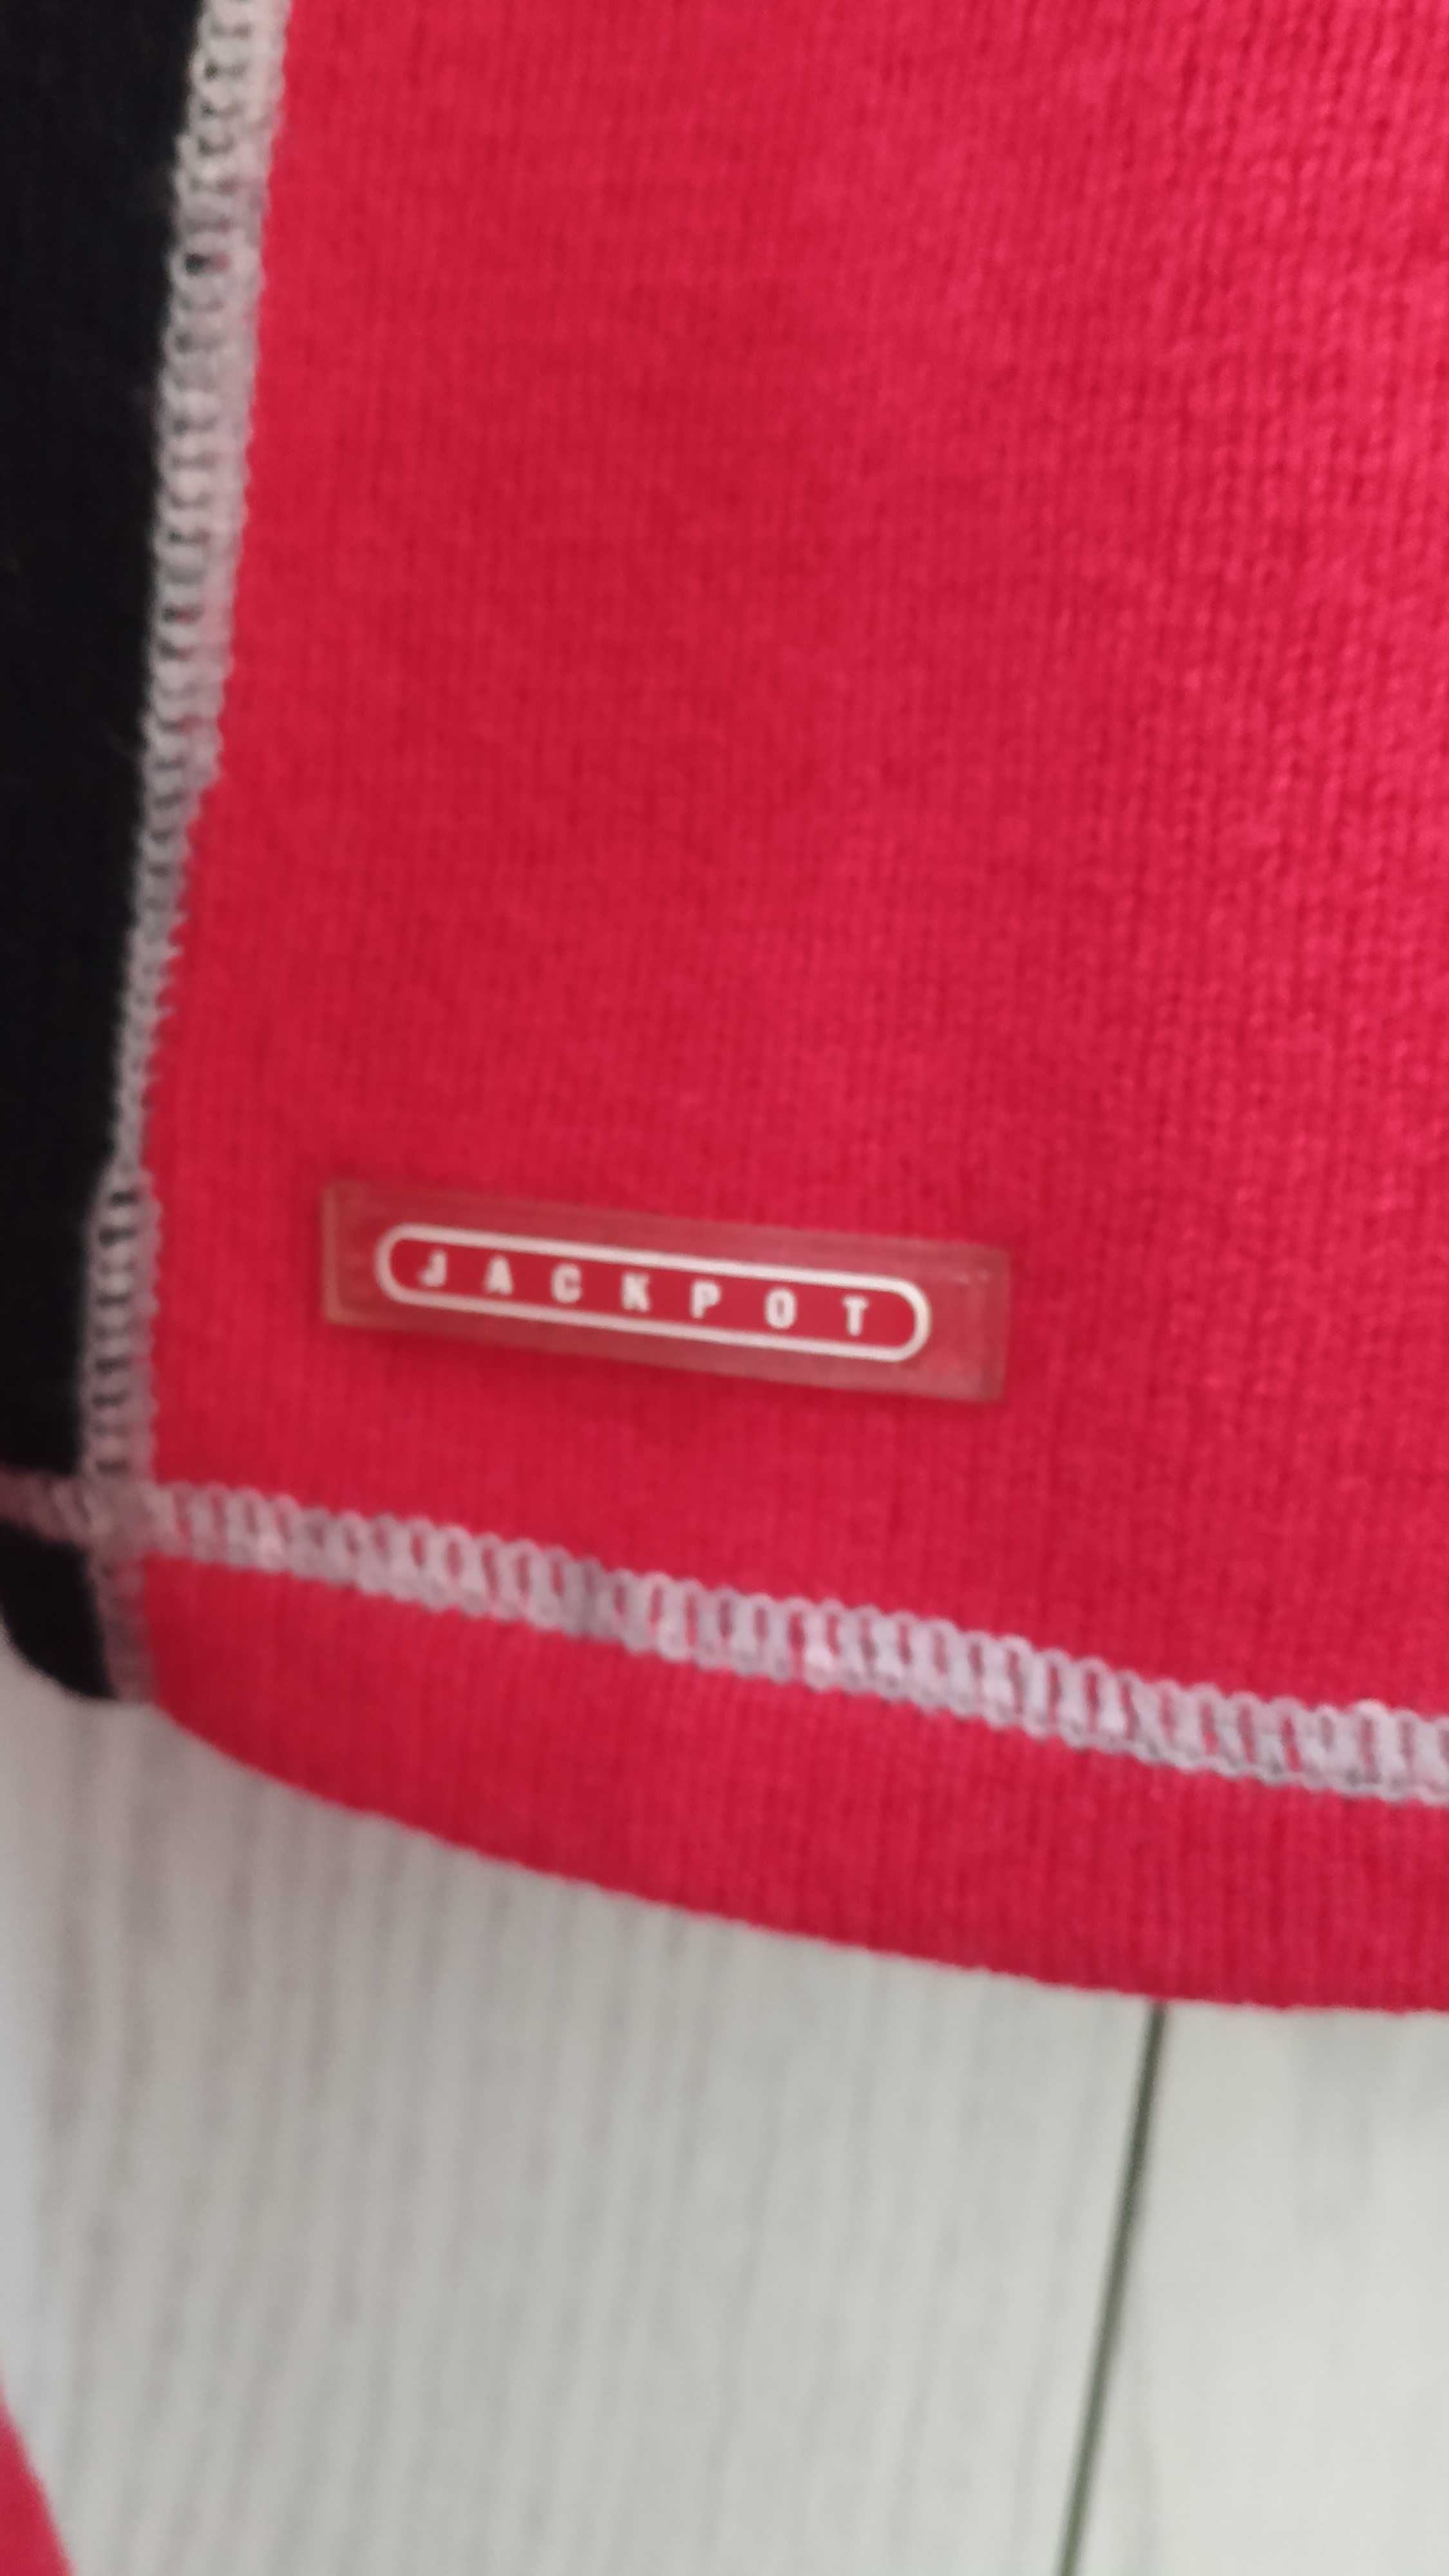 Golf sweter Jackpot r. 40 piękna żywa czerwień prawdziwa wełna